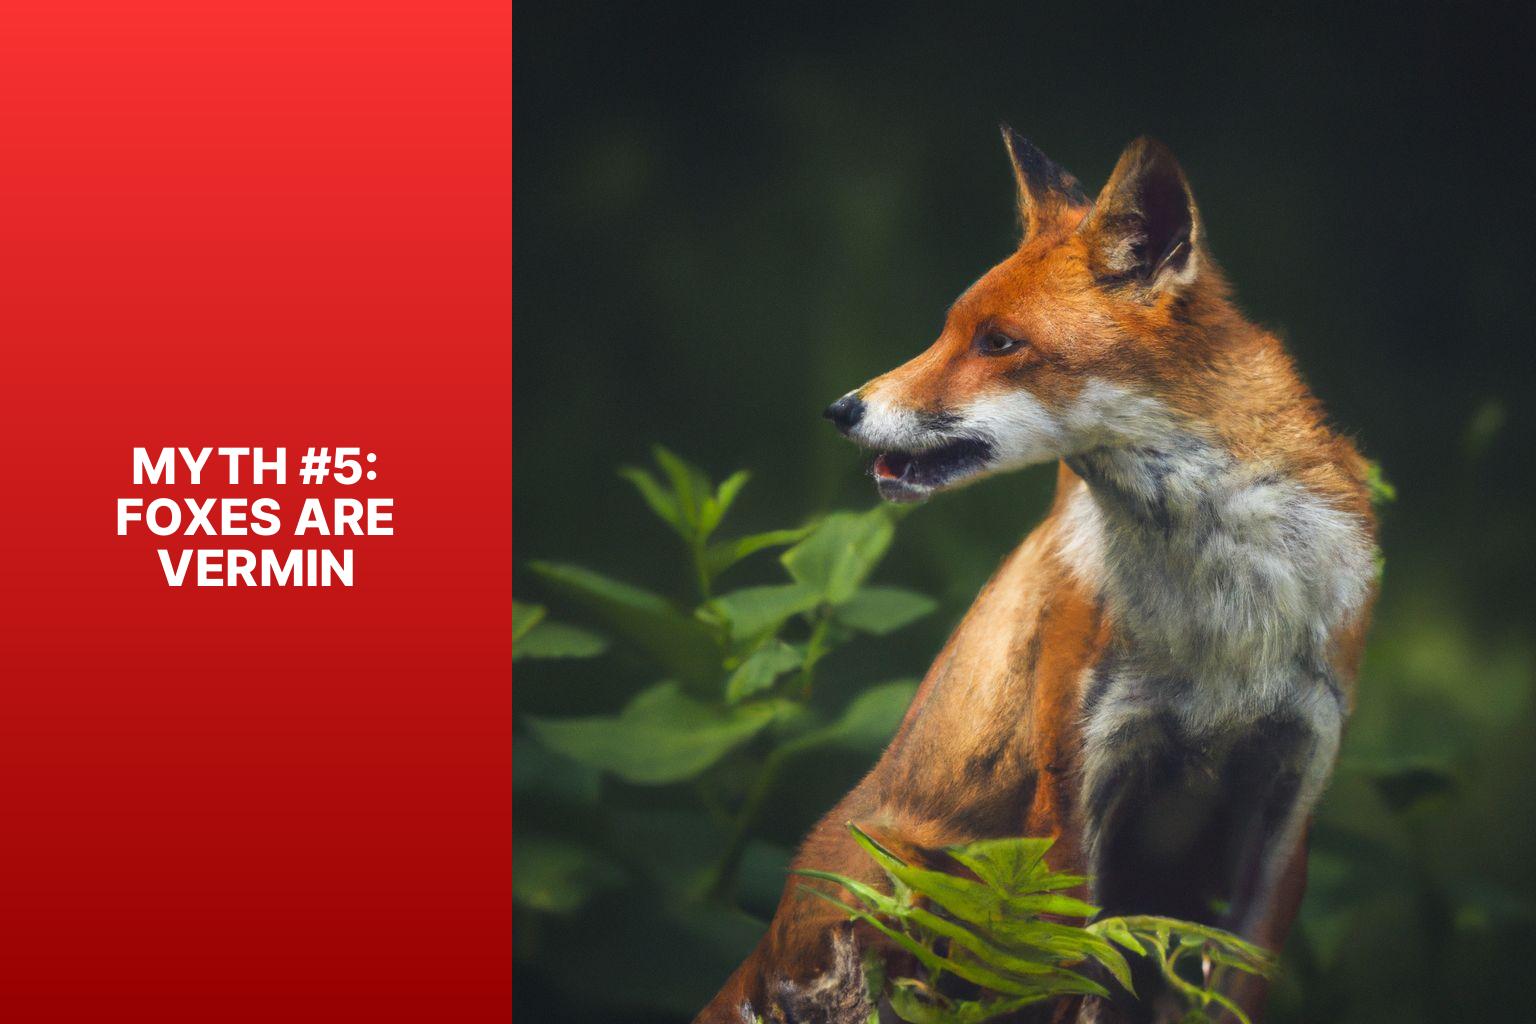 Myth #5: Foxes Are Vermin - Fox Myths Explained 